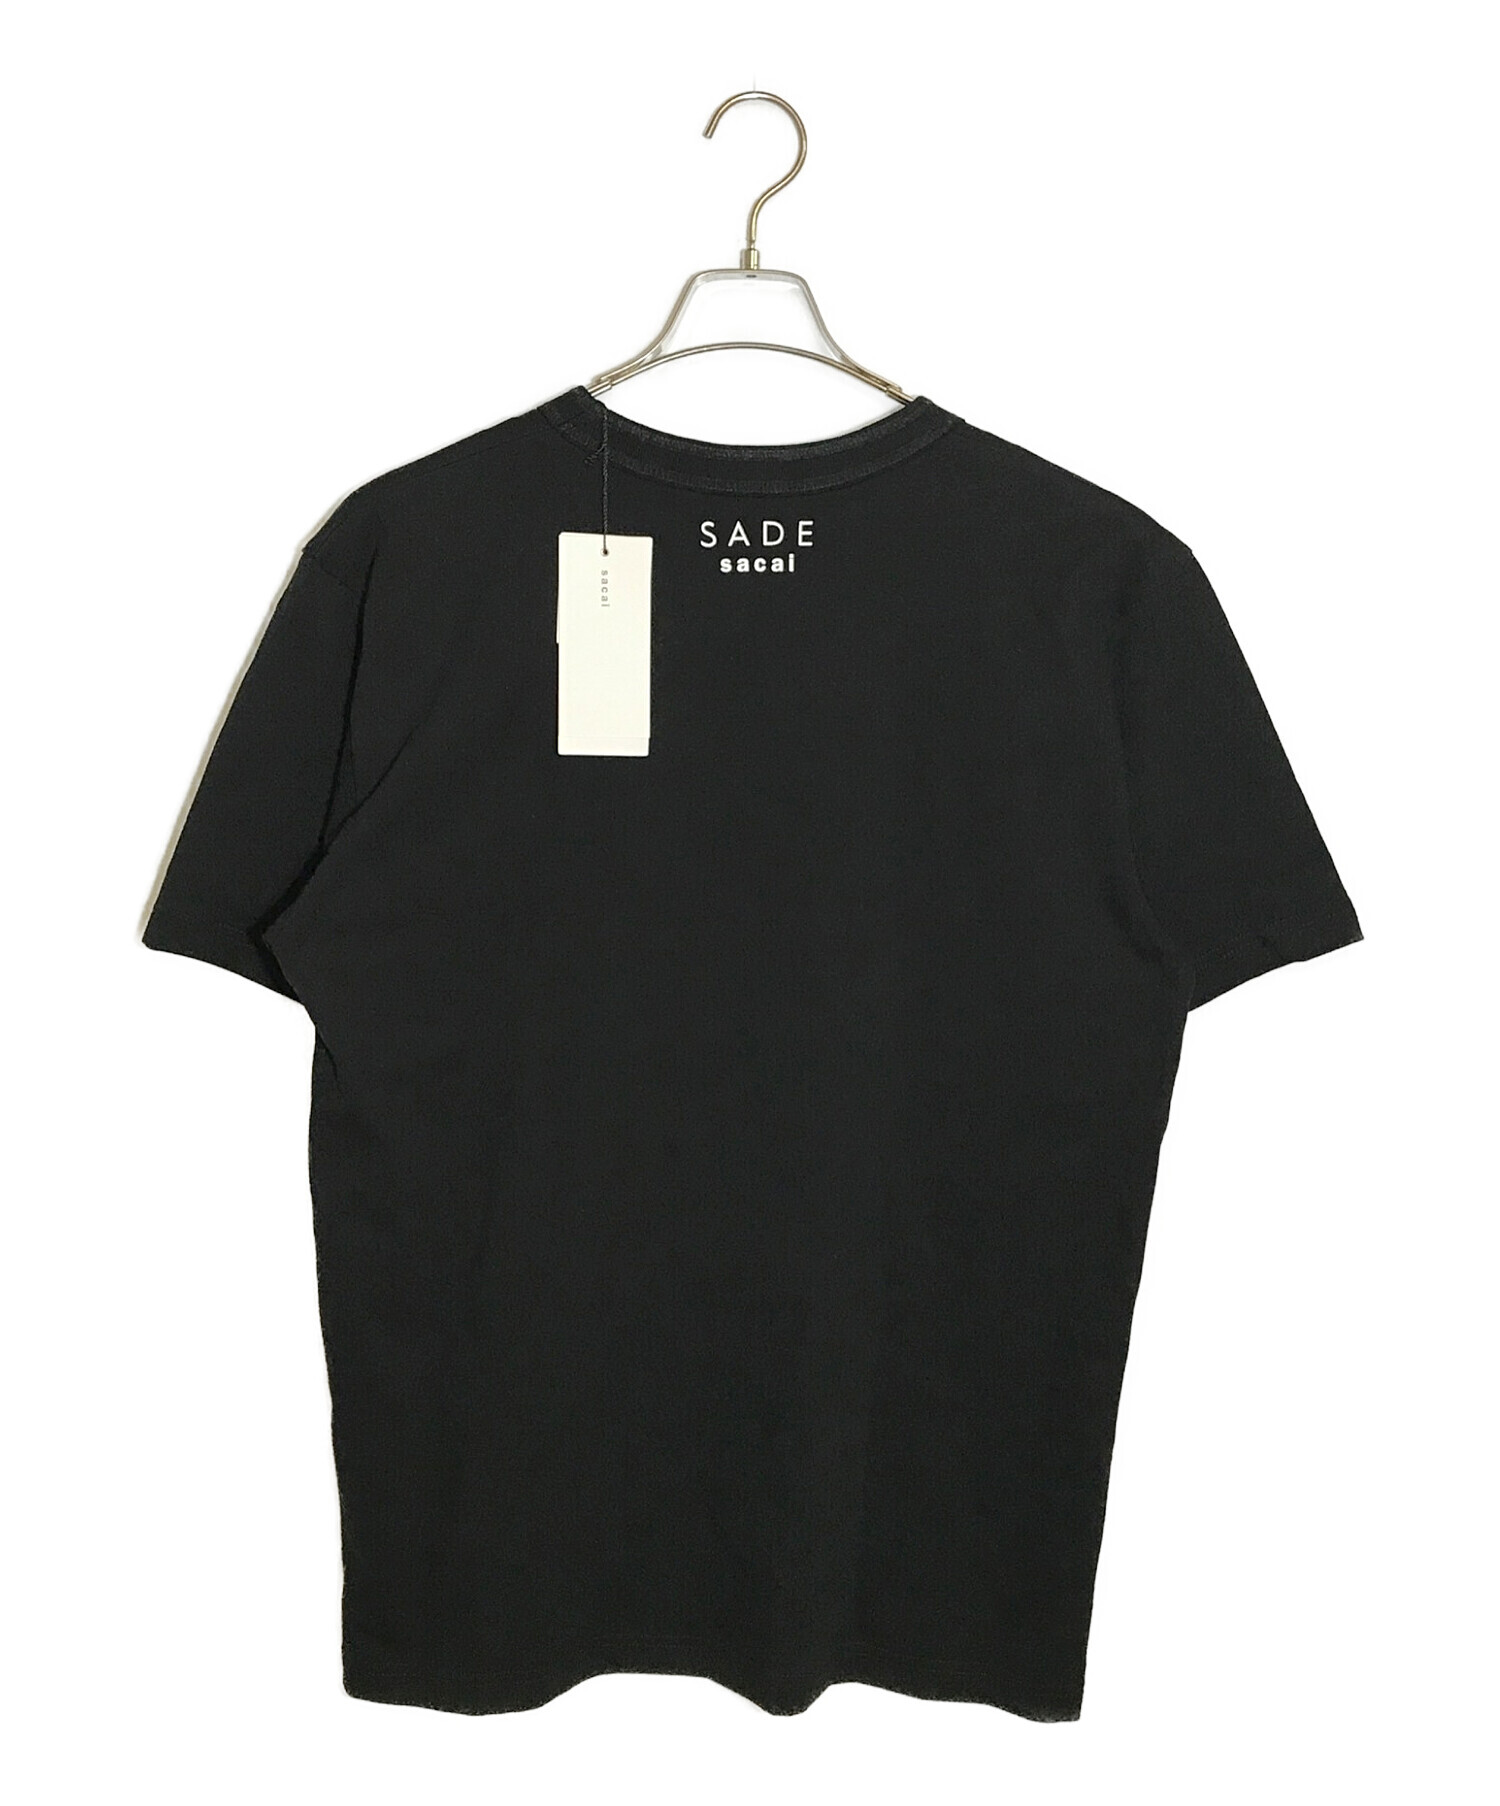 sacai SADE T-Shirt  サイズ4 BLACK